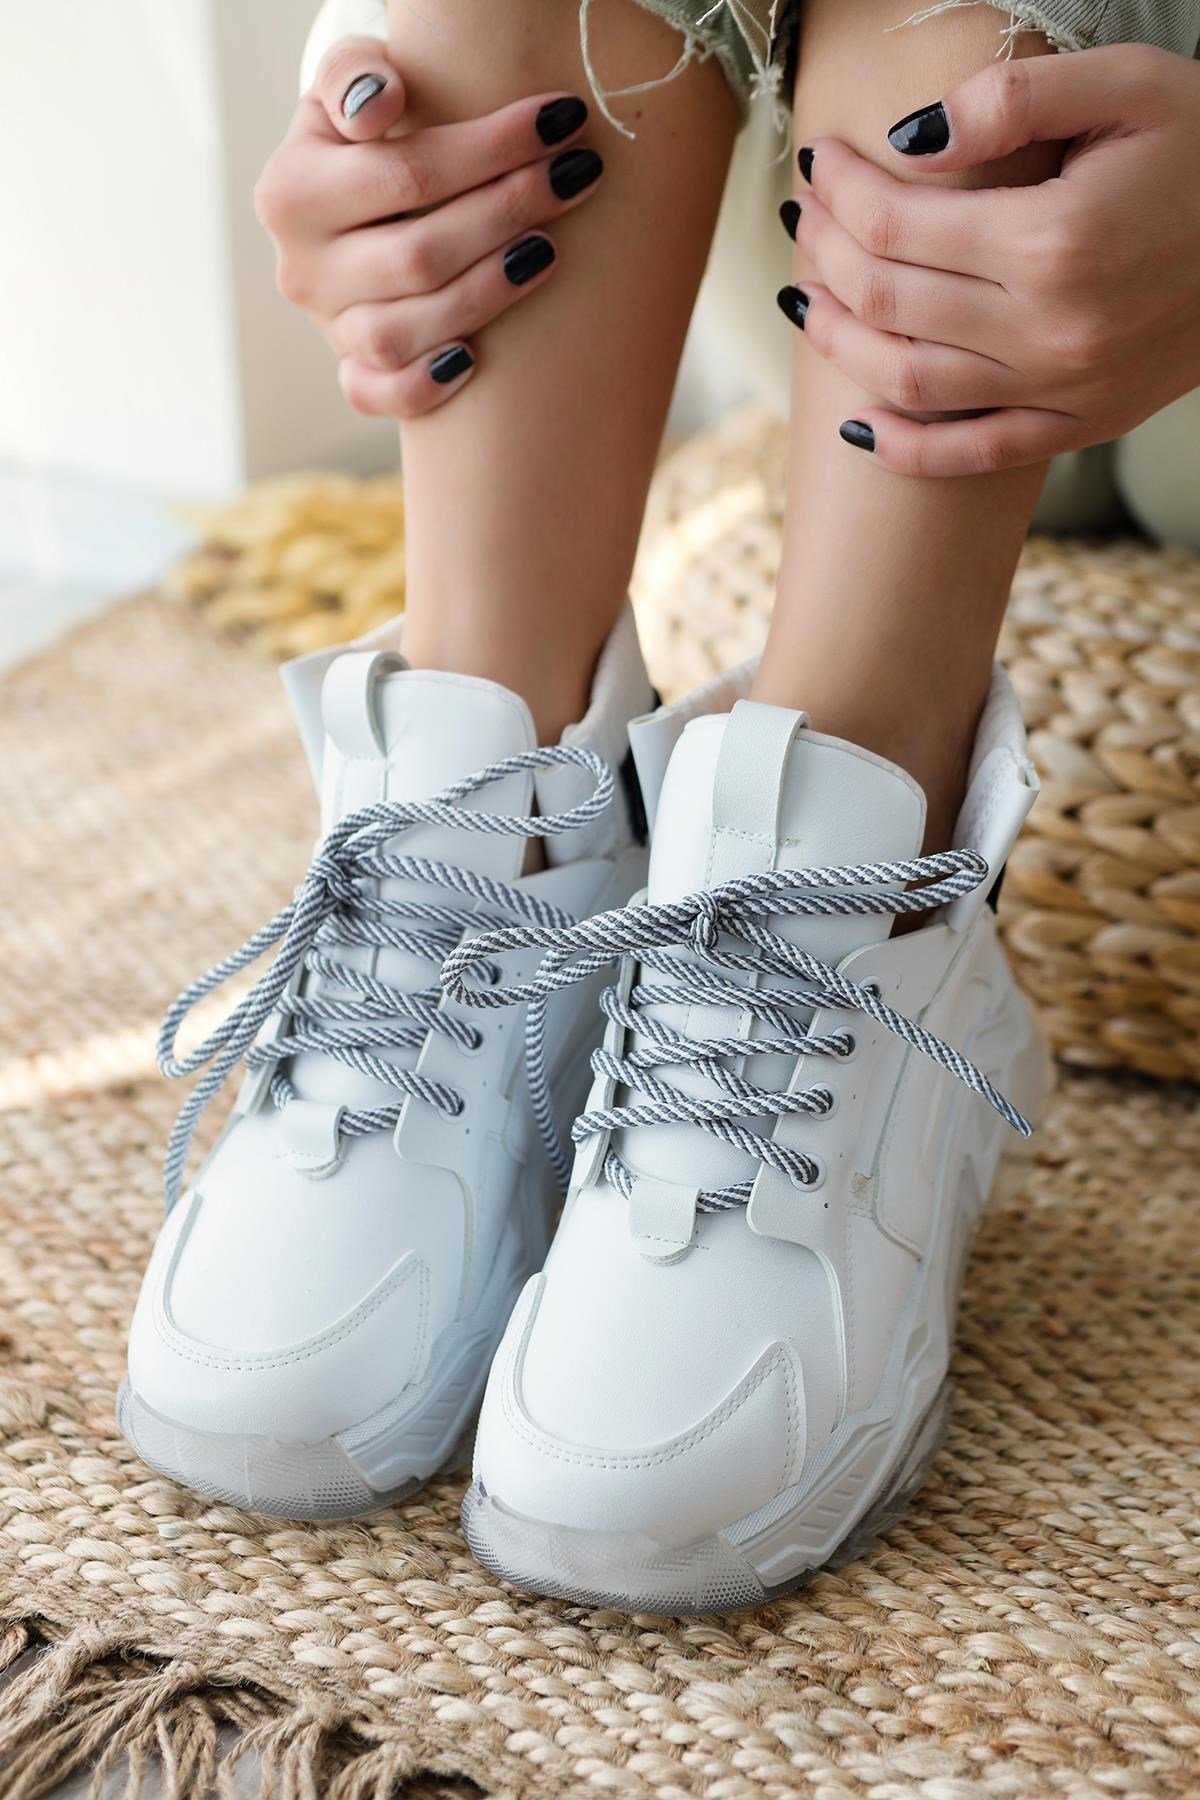 Venus Beyaz Kalın Tabanlı Bağcıklı Fermuarlı Spor Sneakers